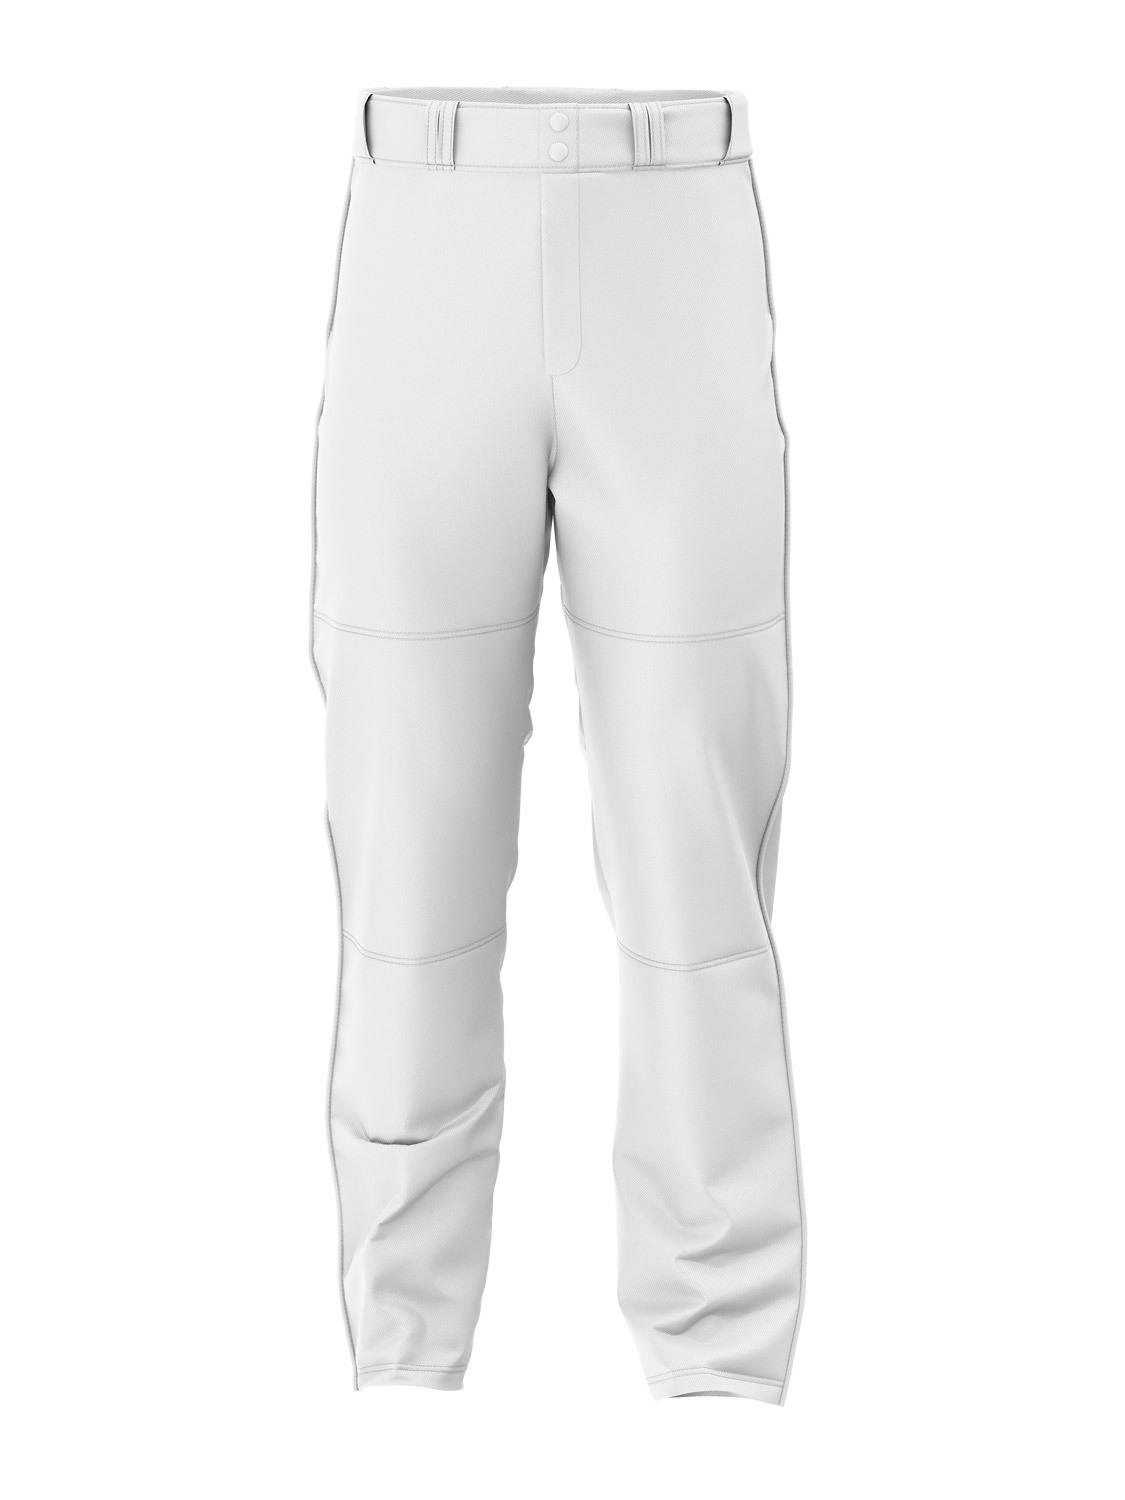 Baseball Pants - White